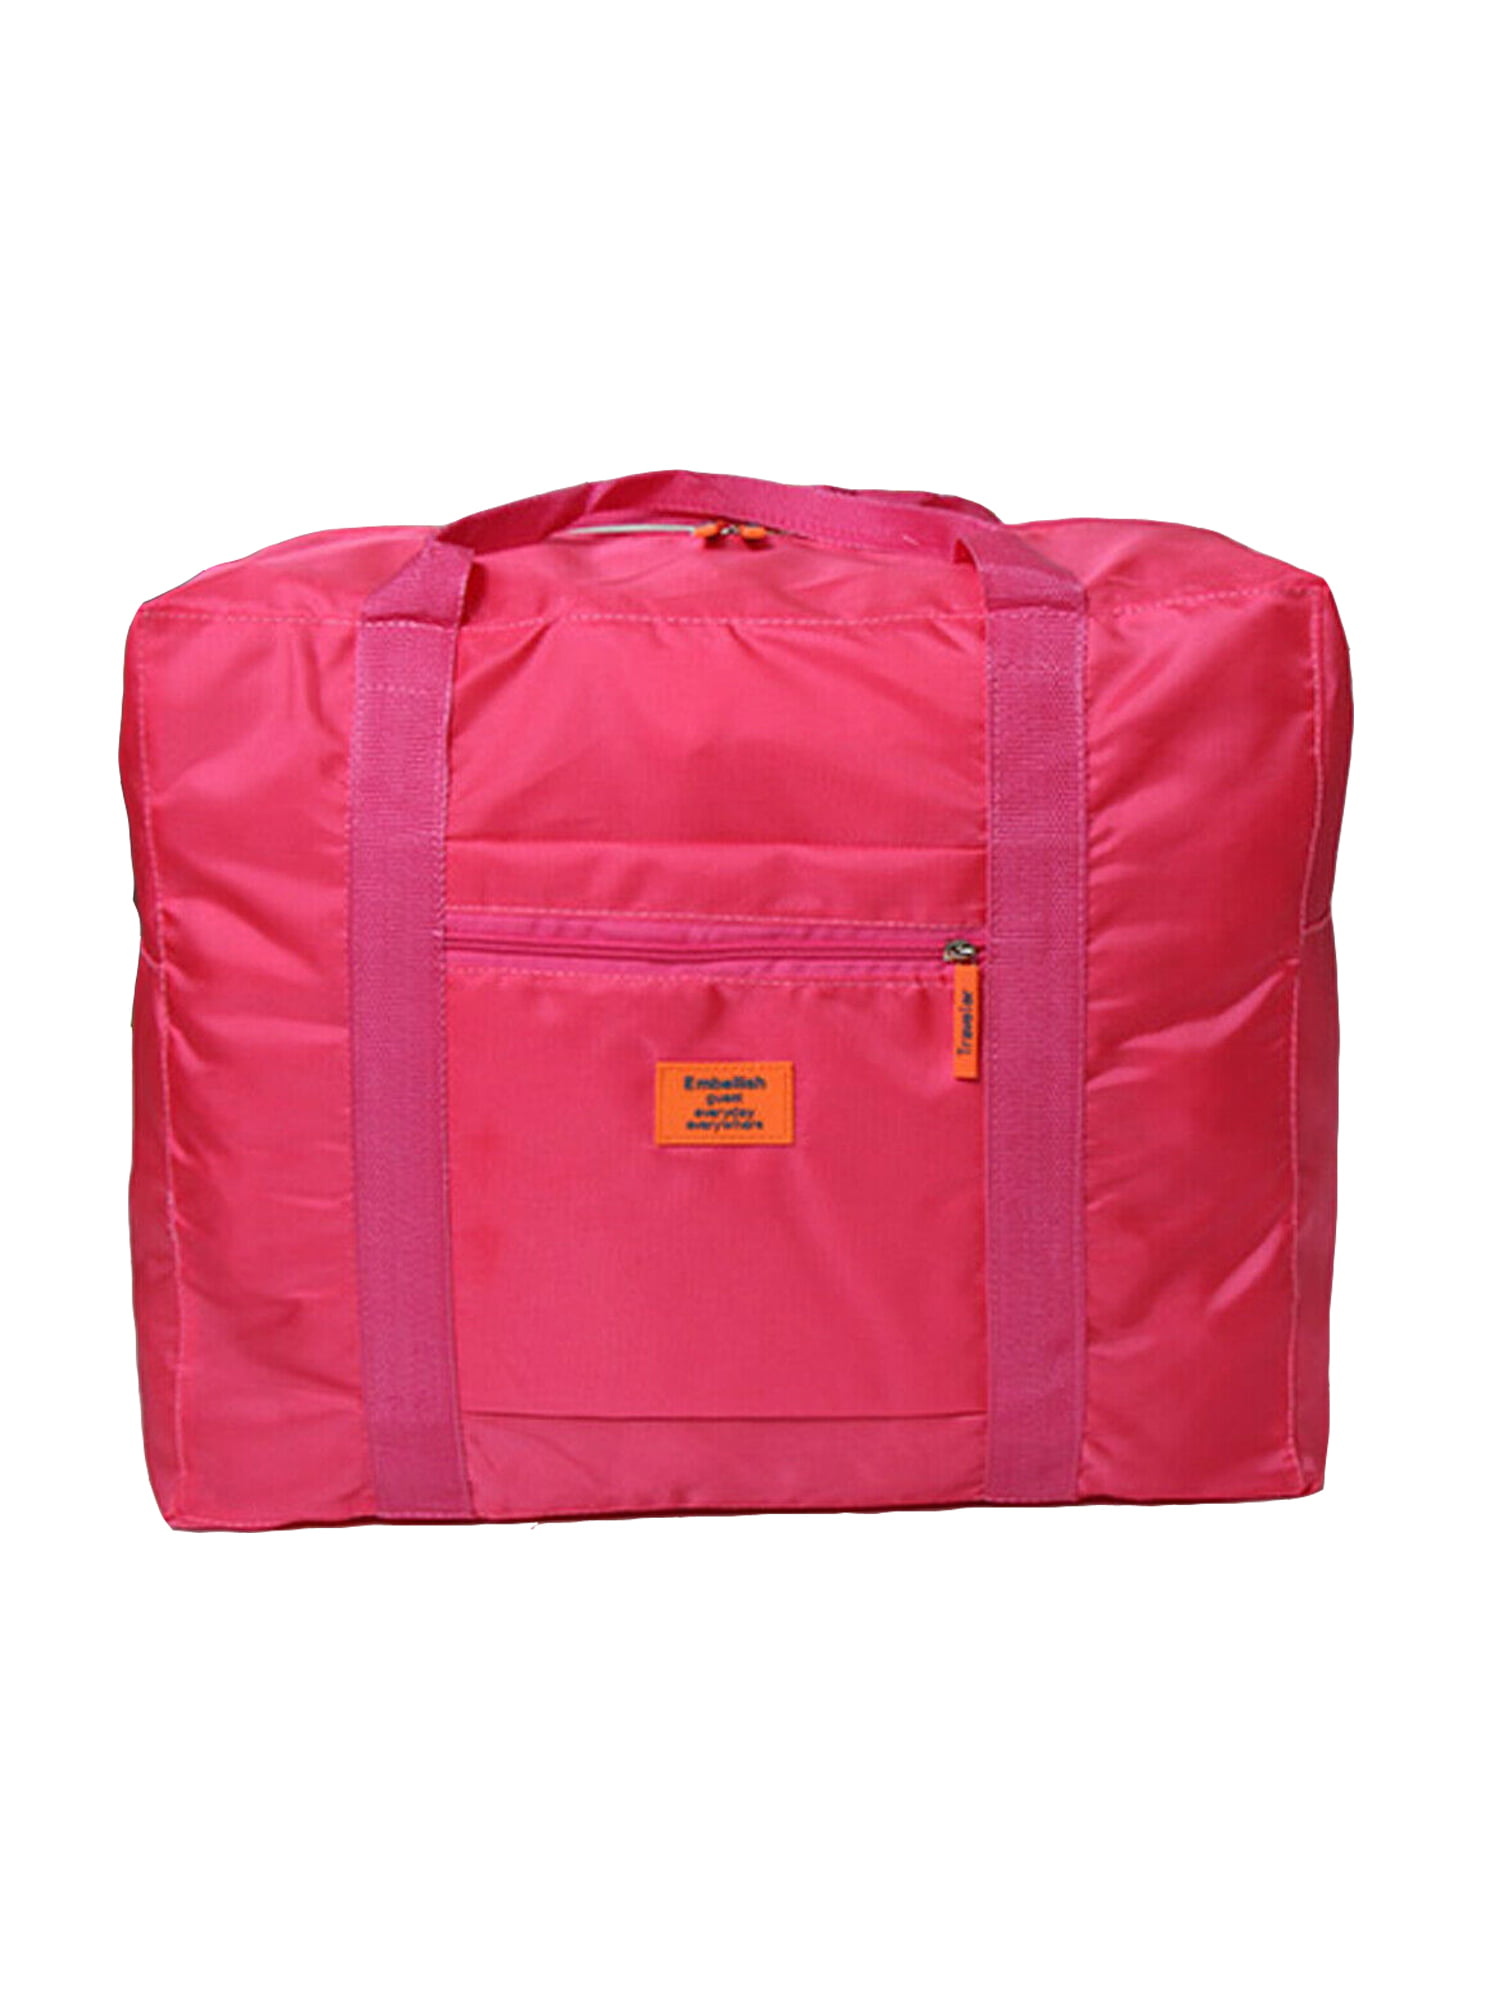 woshilaocai Foldable Large Duffel Bag - www.speedy25.com - www.speedy25.com